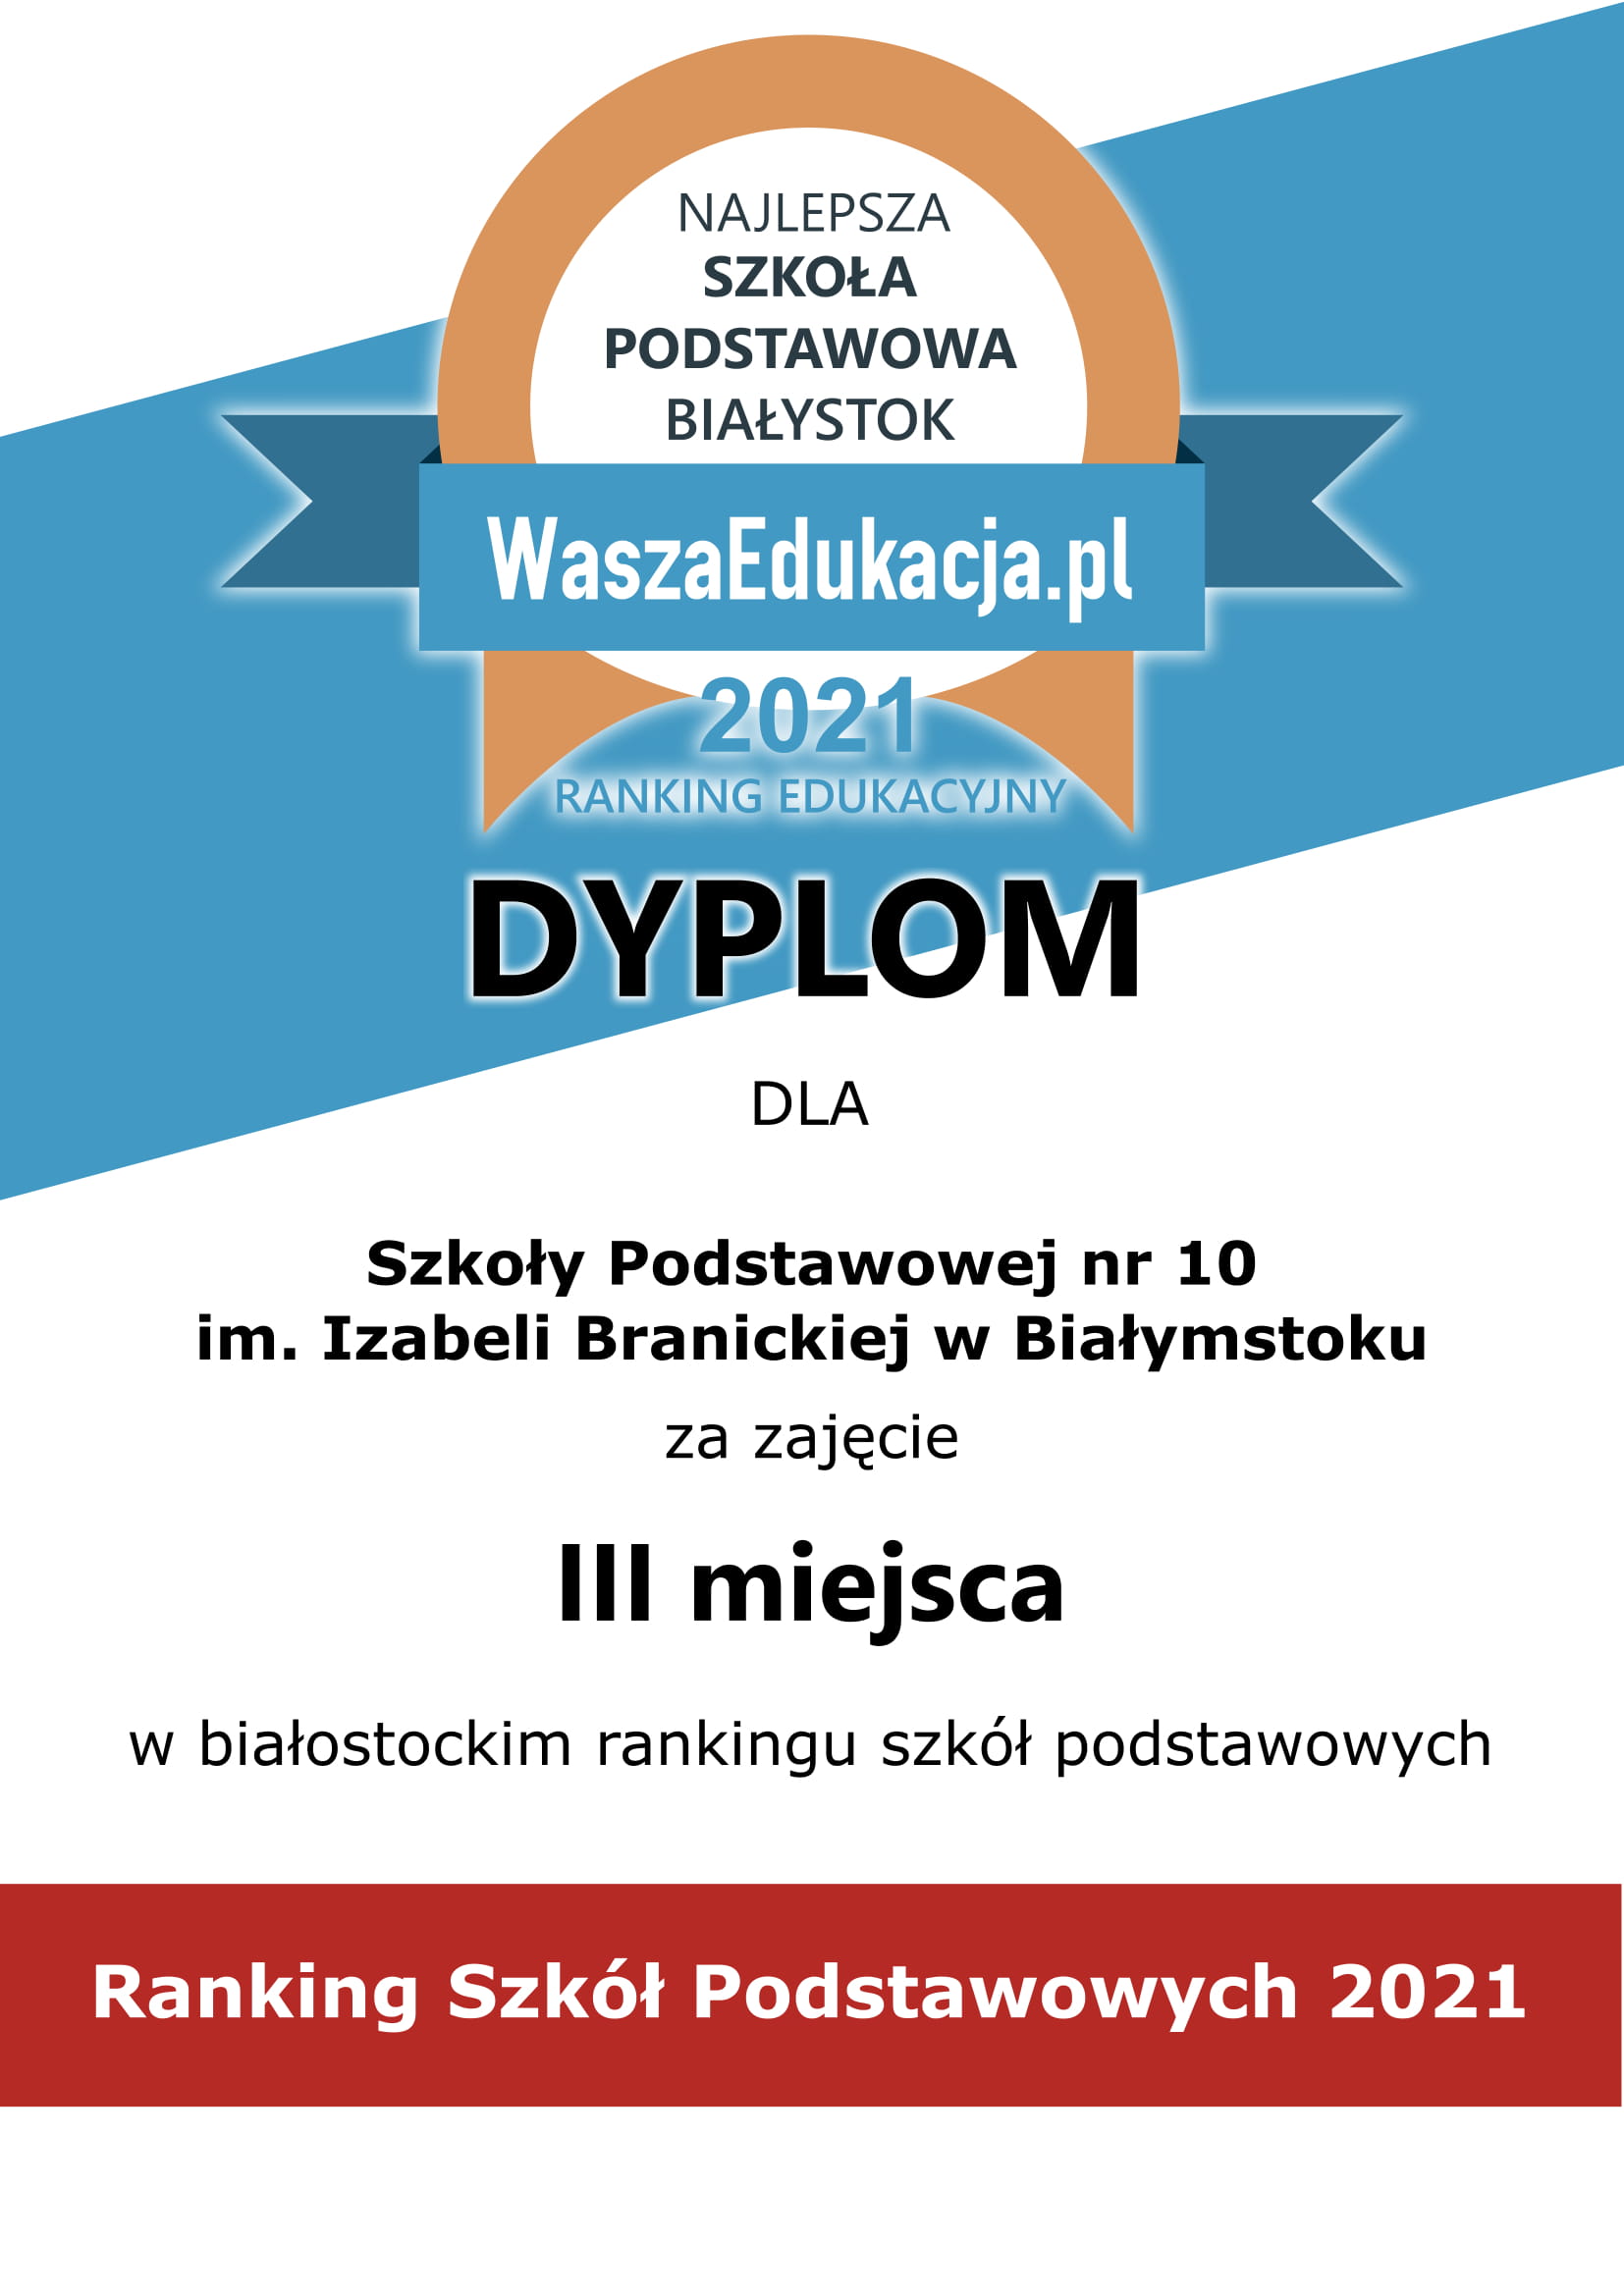 dyplom dla szkoły za zajęcie trzeciego miejsca w rankingu białostockich szkół podstawowych w 2021 roku